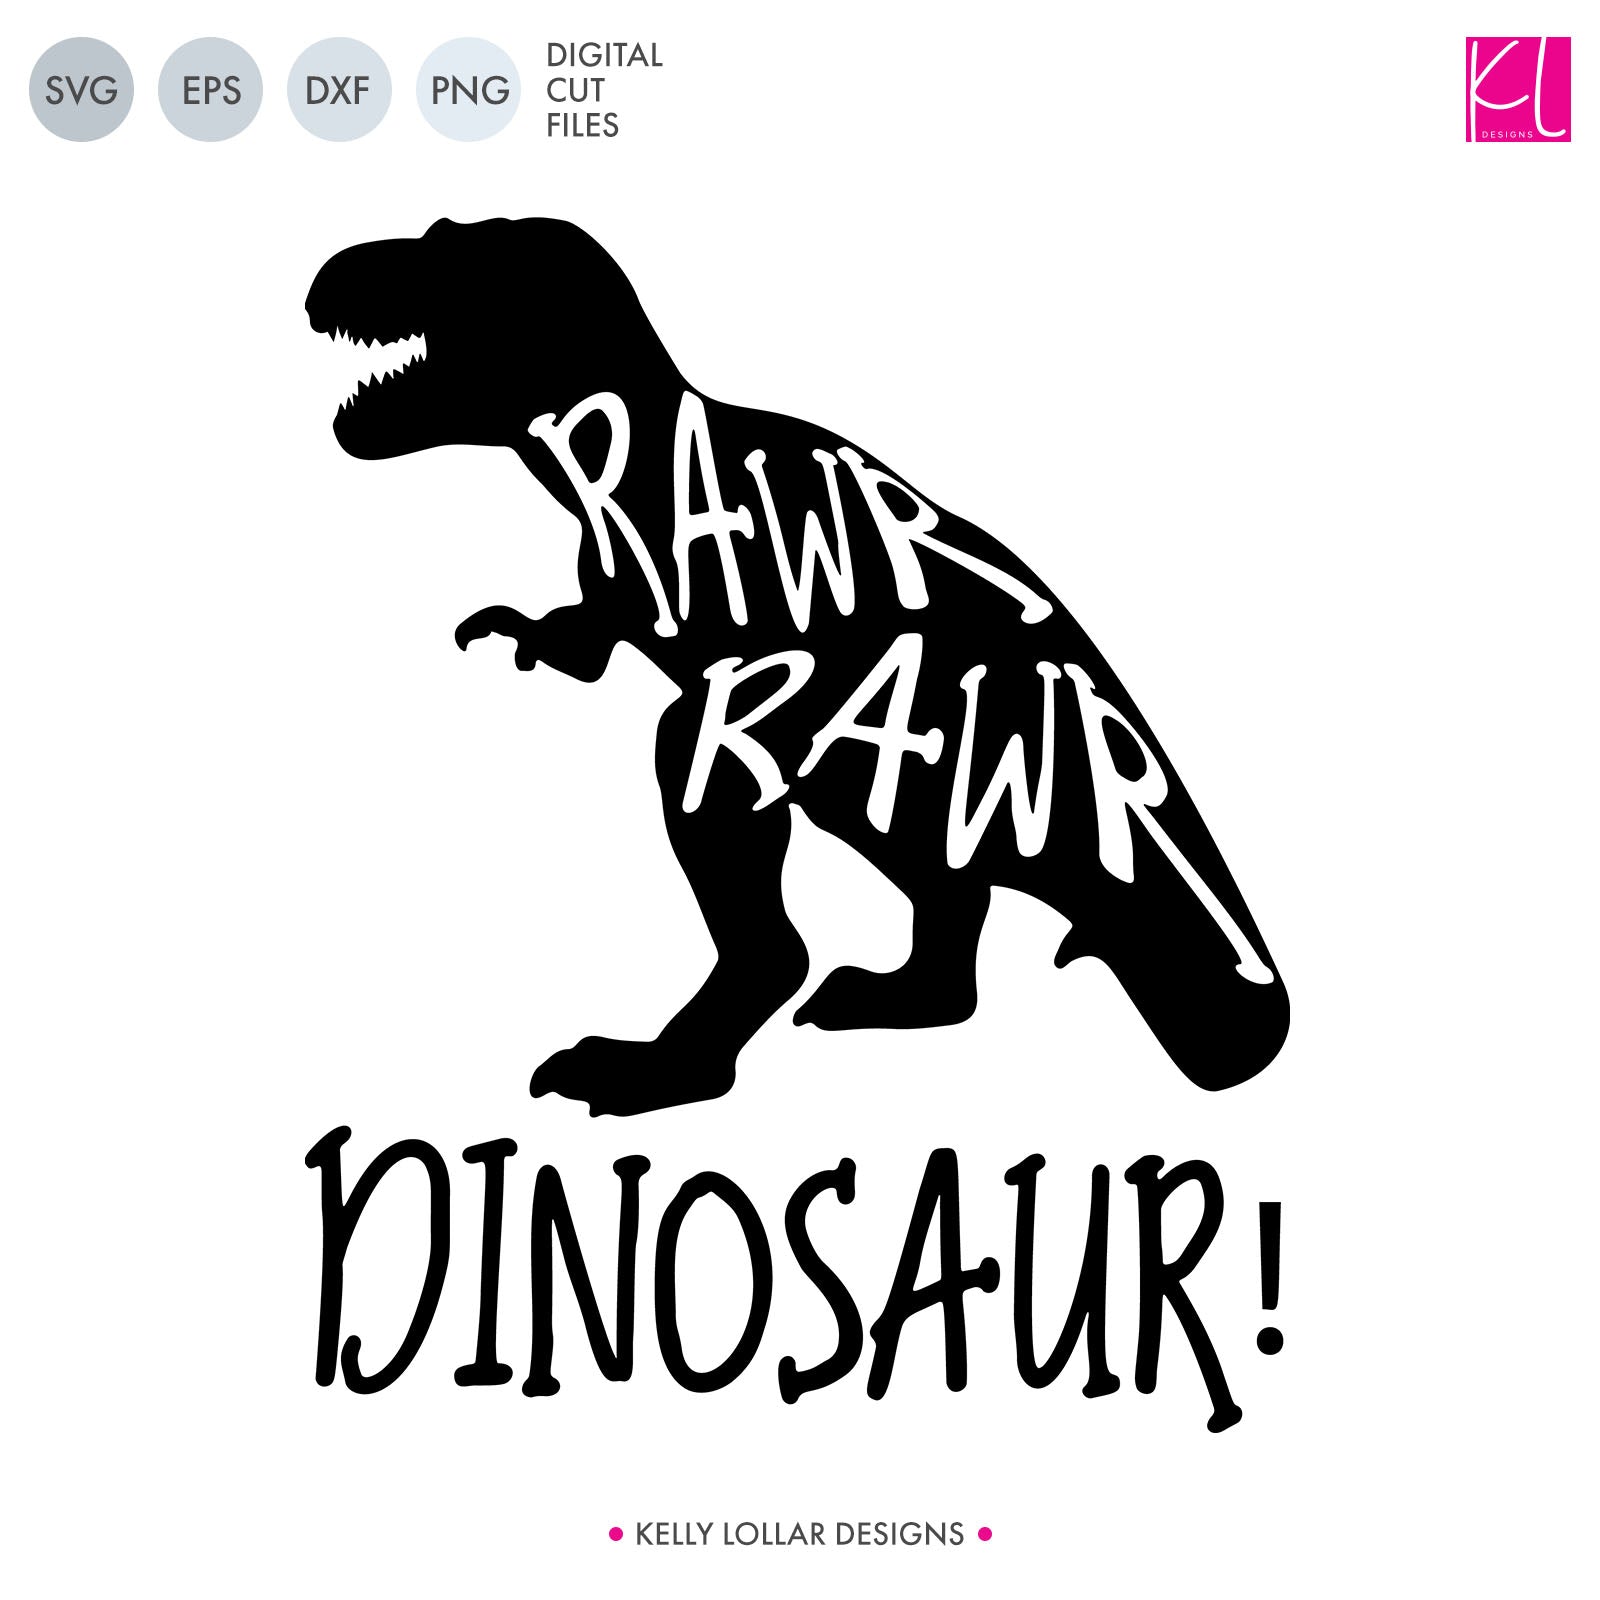 Download Free Rawr Rawr Dinosaur Svg Cut Files Kelly Lollar Designs